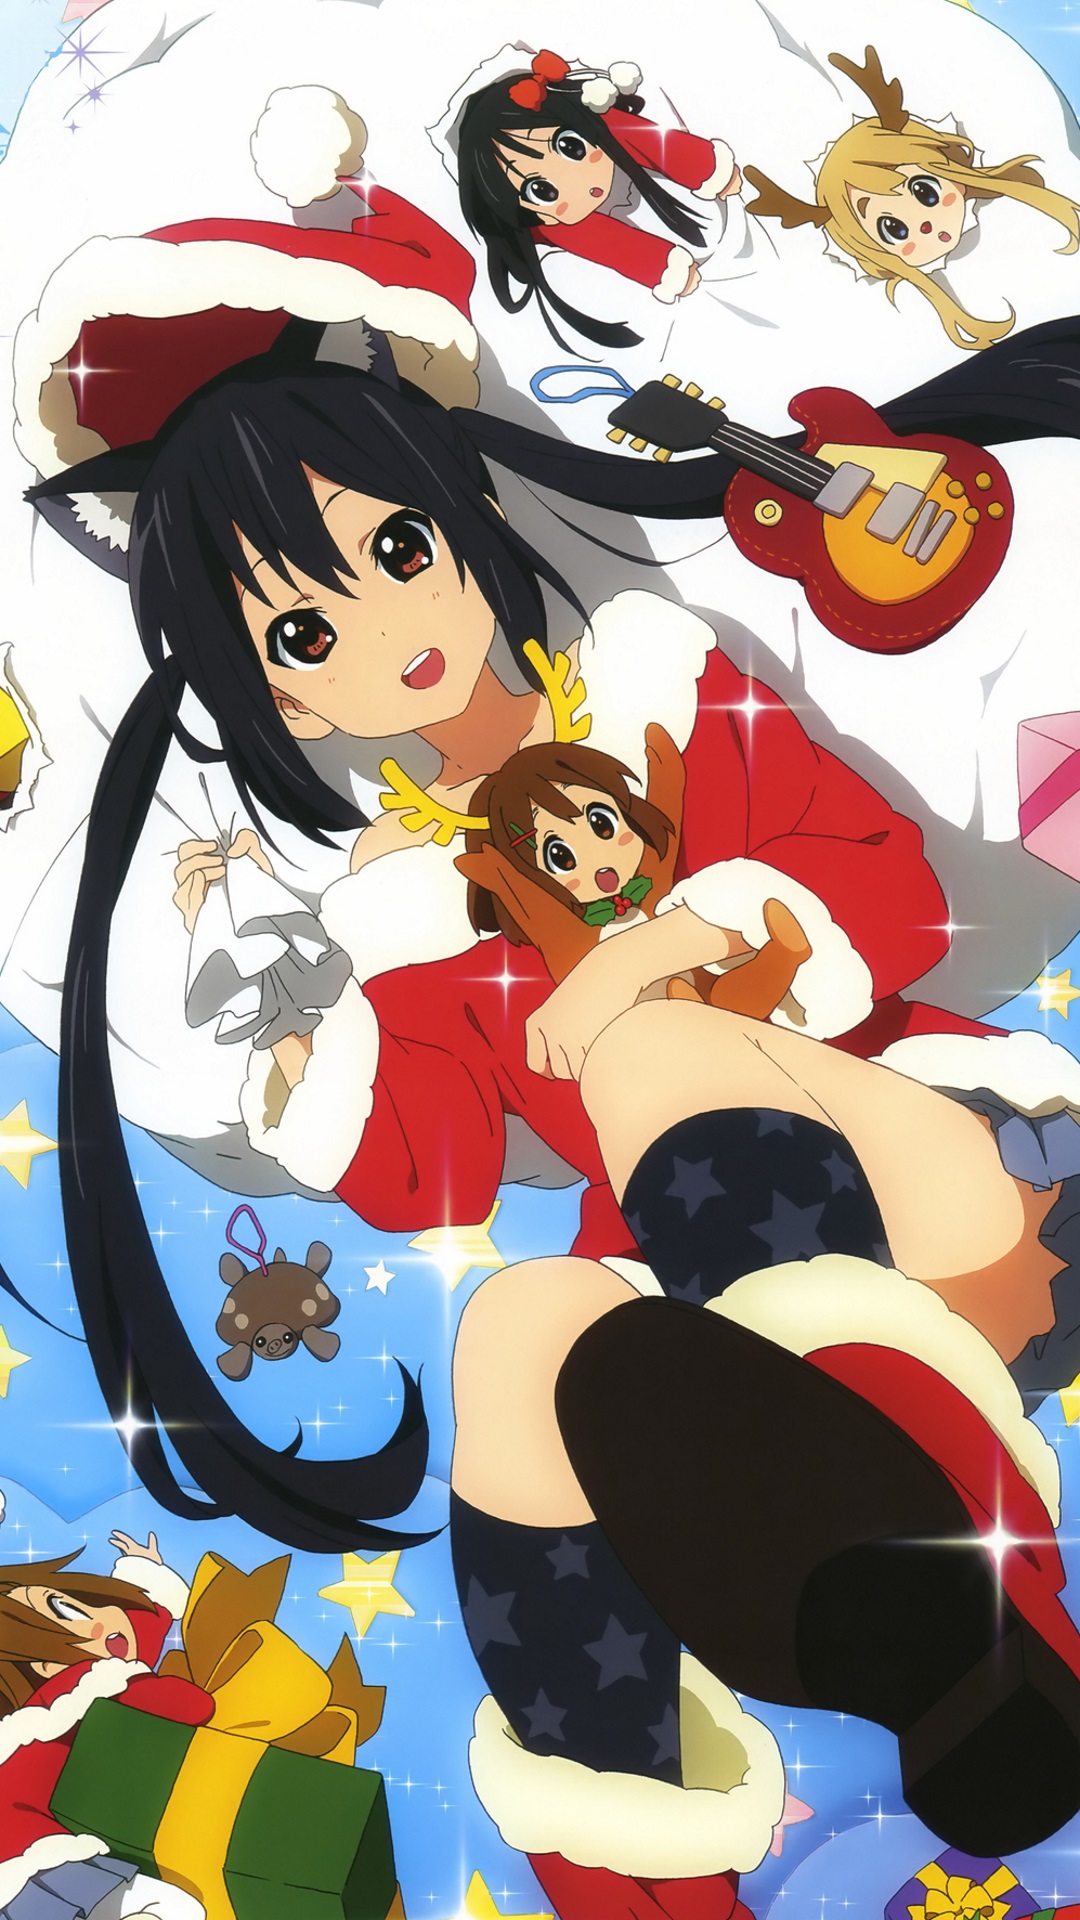 Christmas 15 Anime K On Sony Xperia Z Wallpaper 1080 19 Kawaii Mobile